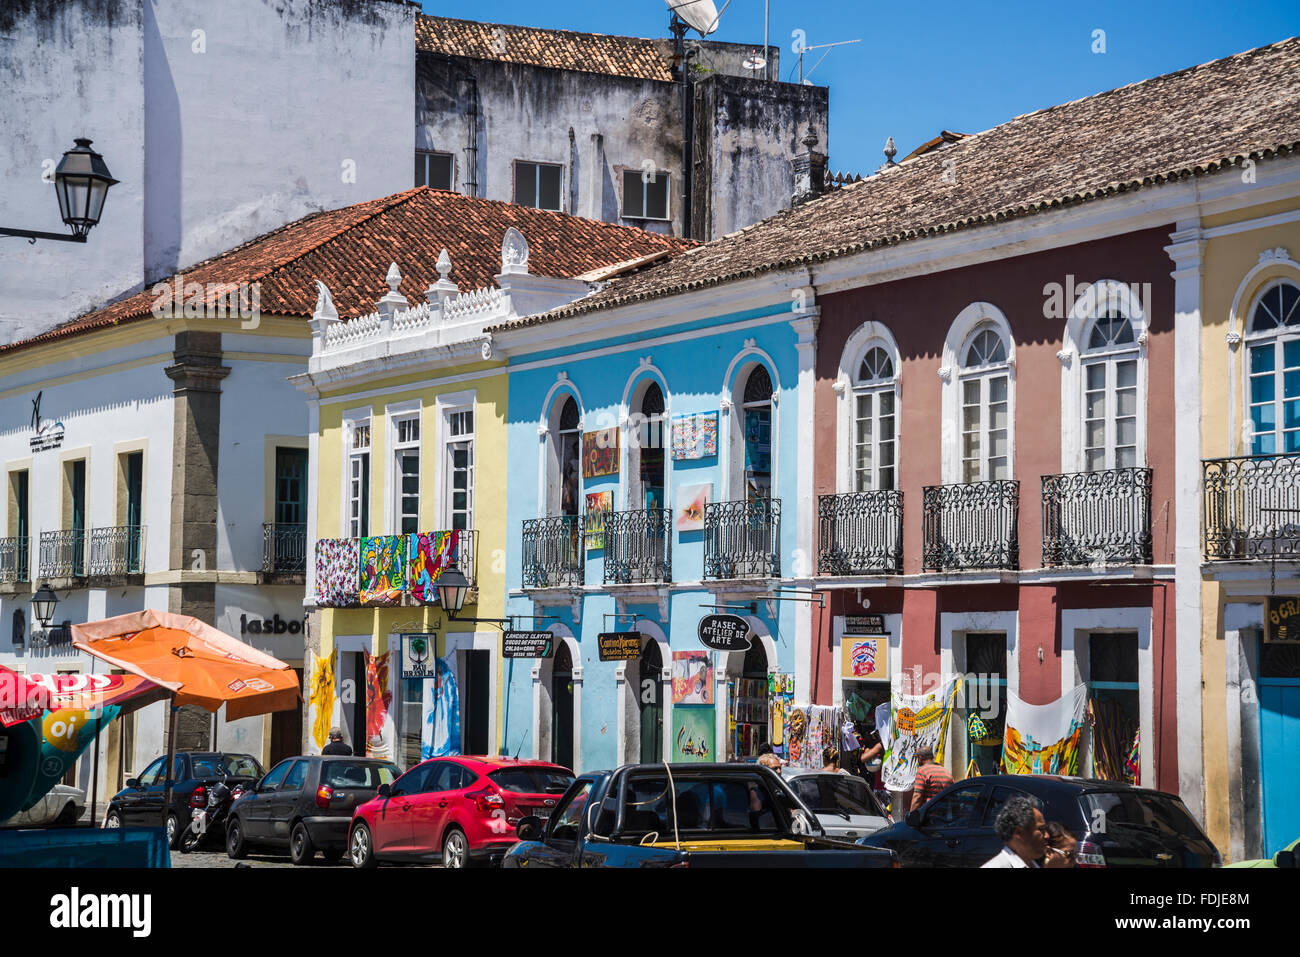 Portoghese architettura coloniale, Praca de Se, Salvador, Bahia, Brasile Foto Stock